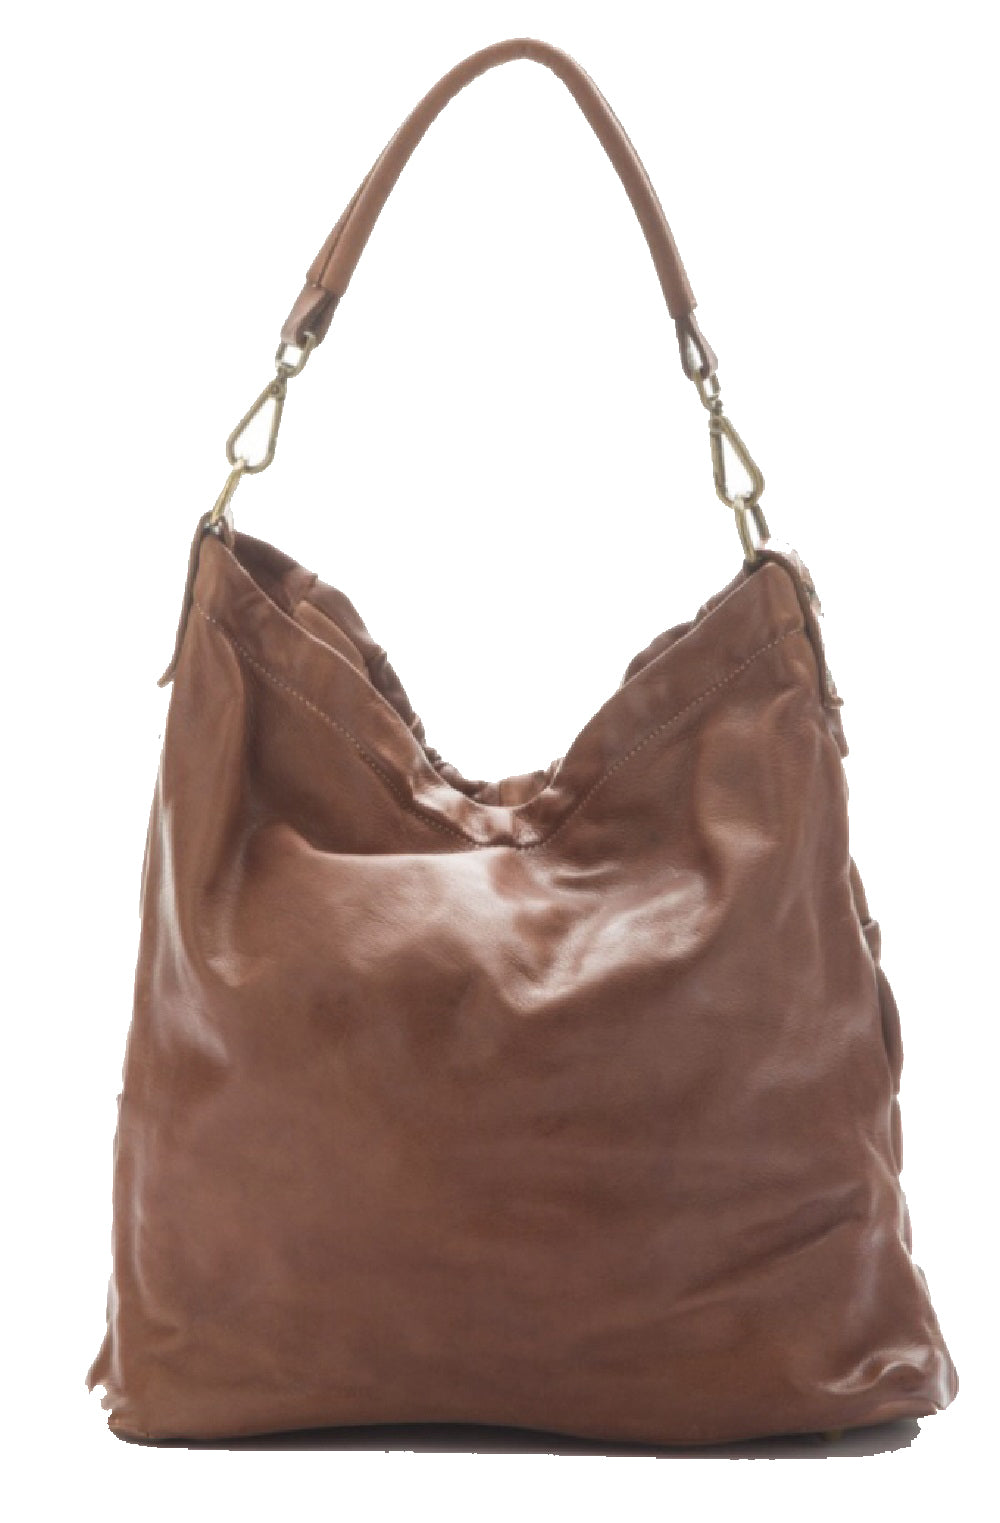 BZNA Bag Santino grau Italy Designer Damen Handtasche Schultertasche Tasche